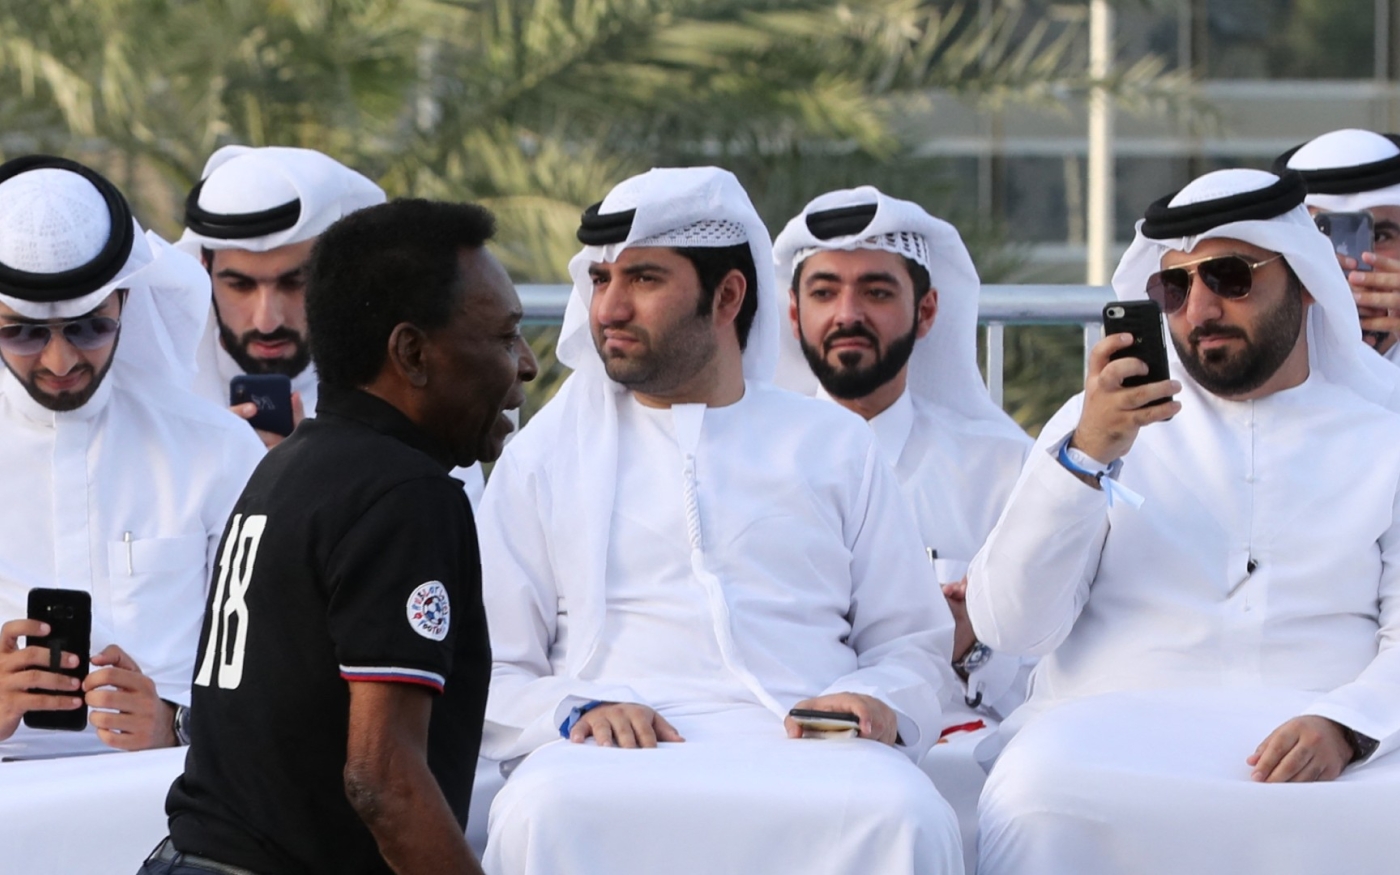 Pelé arrive dans les jardins de l’opéra de Dubaï pour assister à un match amical de football, le 15 avril 2018 (AFP)